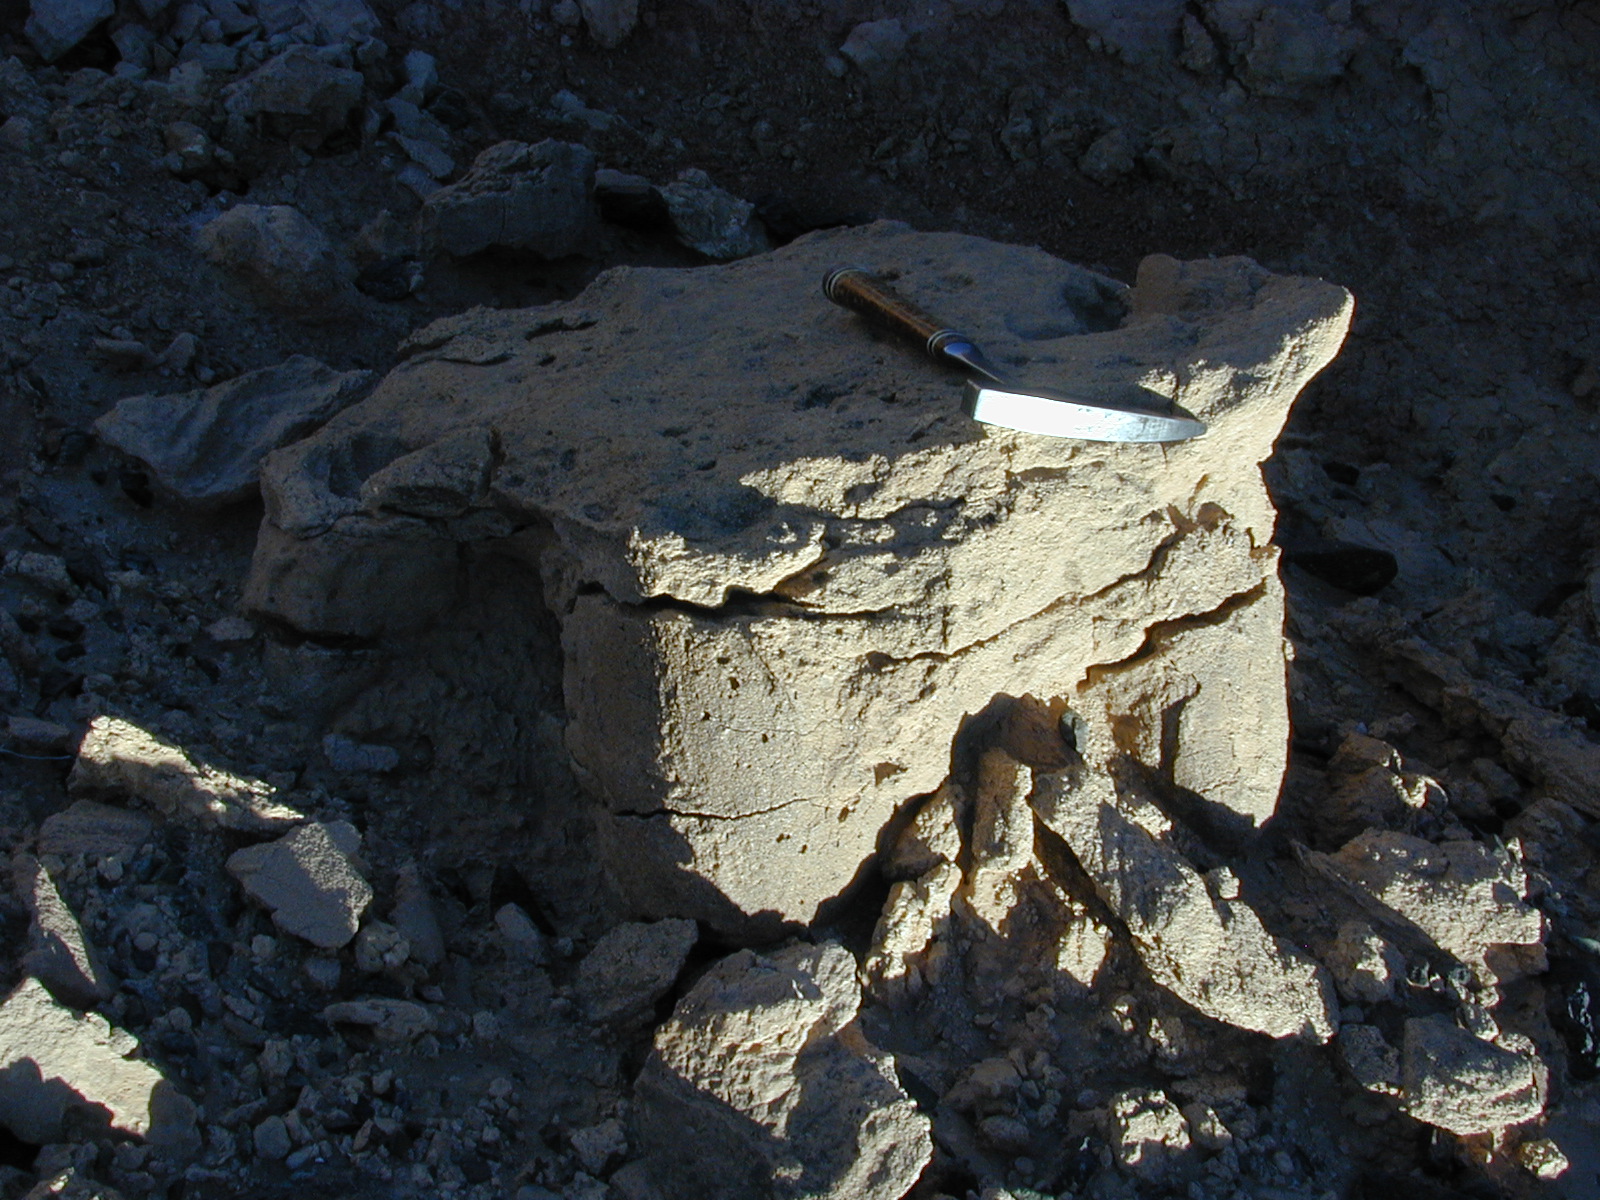 Přirozený odlitek otisku stopy zadní končetiny neznámého sauropodního dinosaura. Vzhledem ke skutečnosti, že se jedná o sedimenty geologického souvrství Nemegt, je poměrně pravděpodobným původcem právě saltasaurid druhu Opisthocoelicaudia skarzynskii